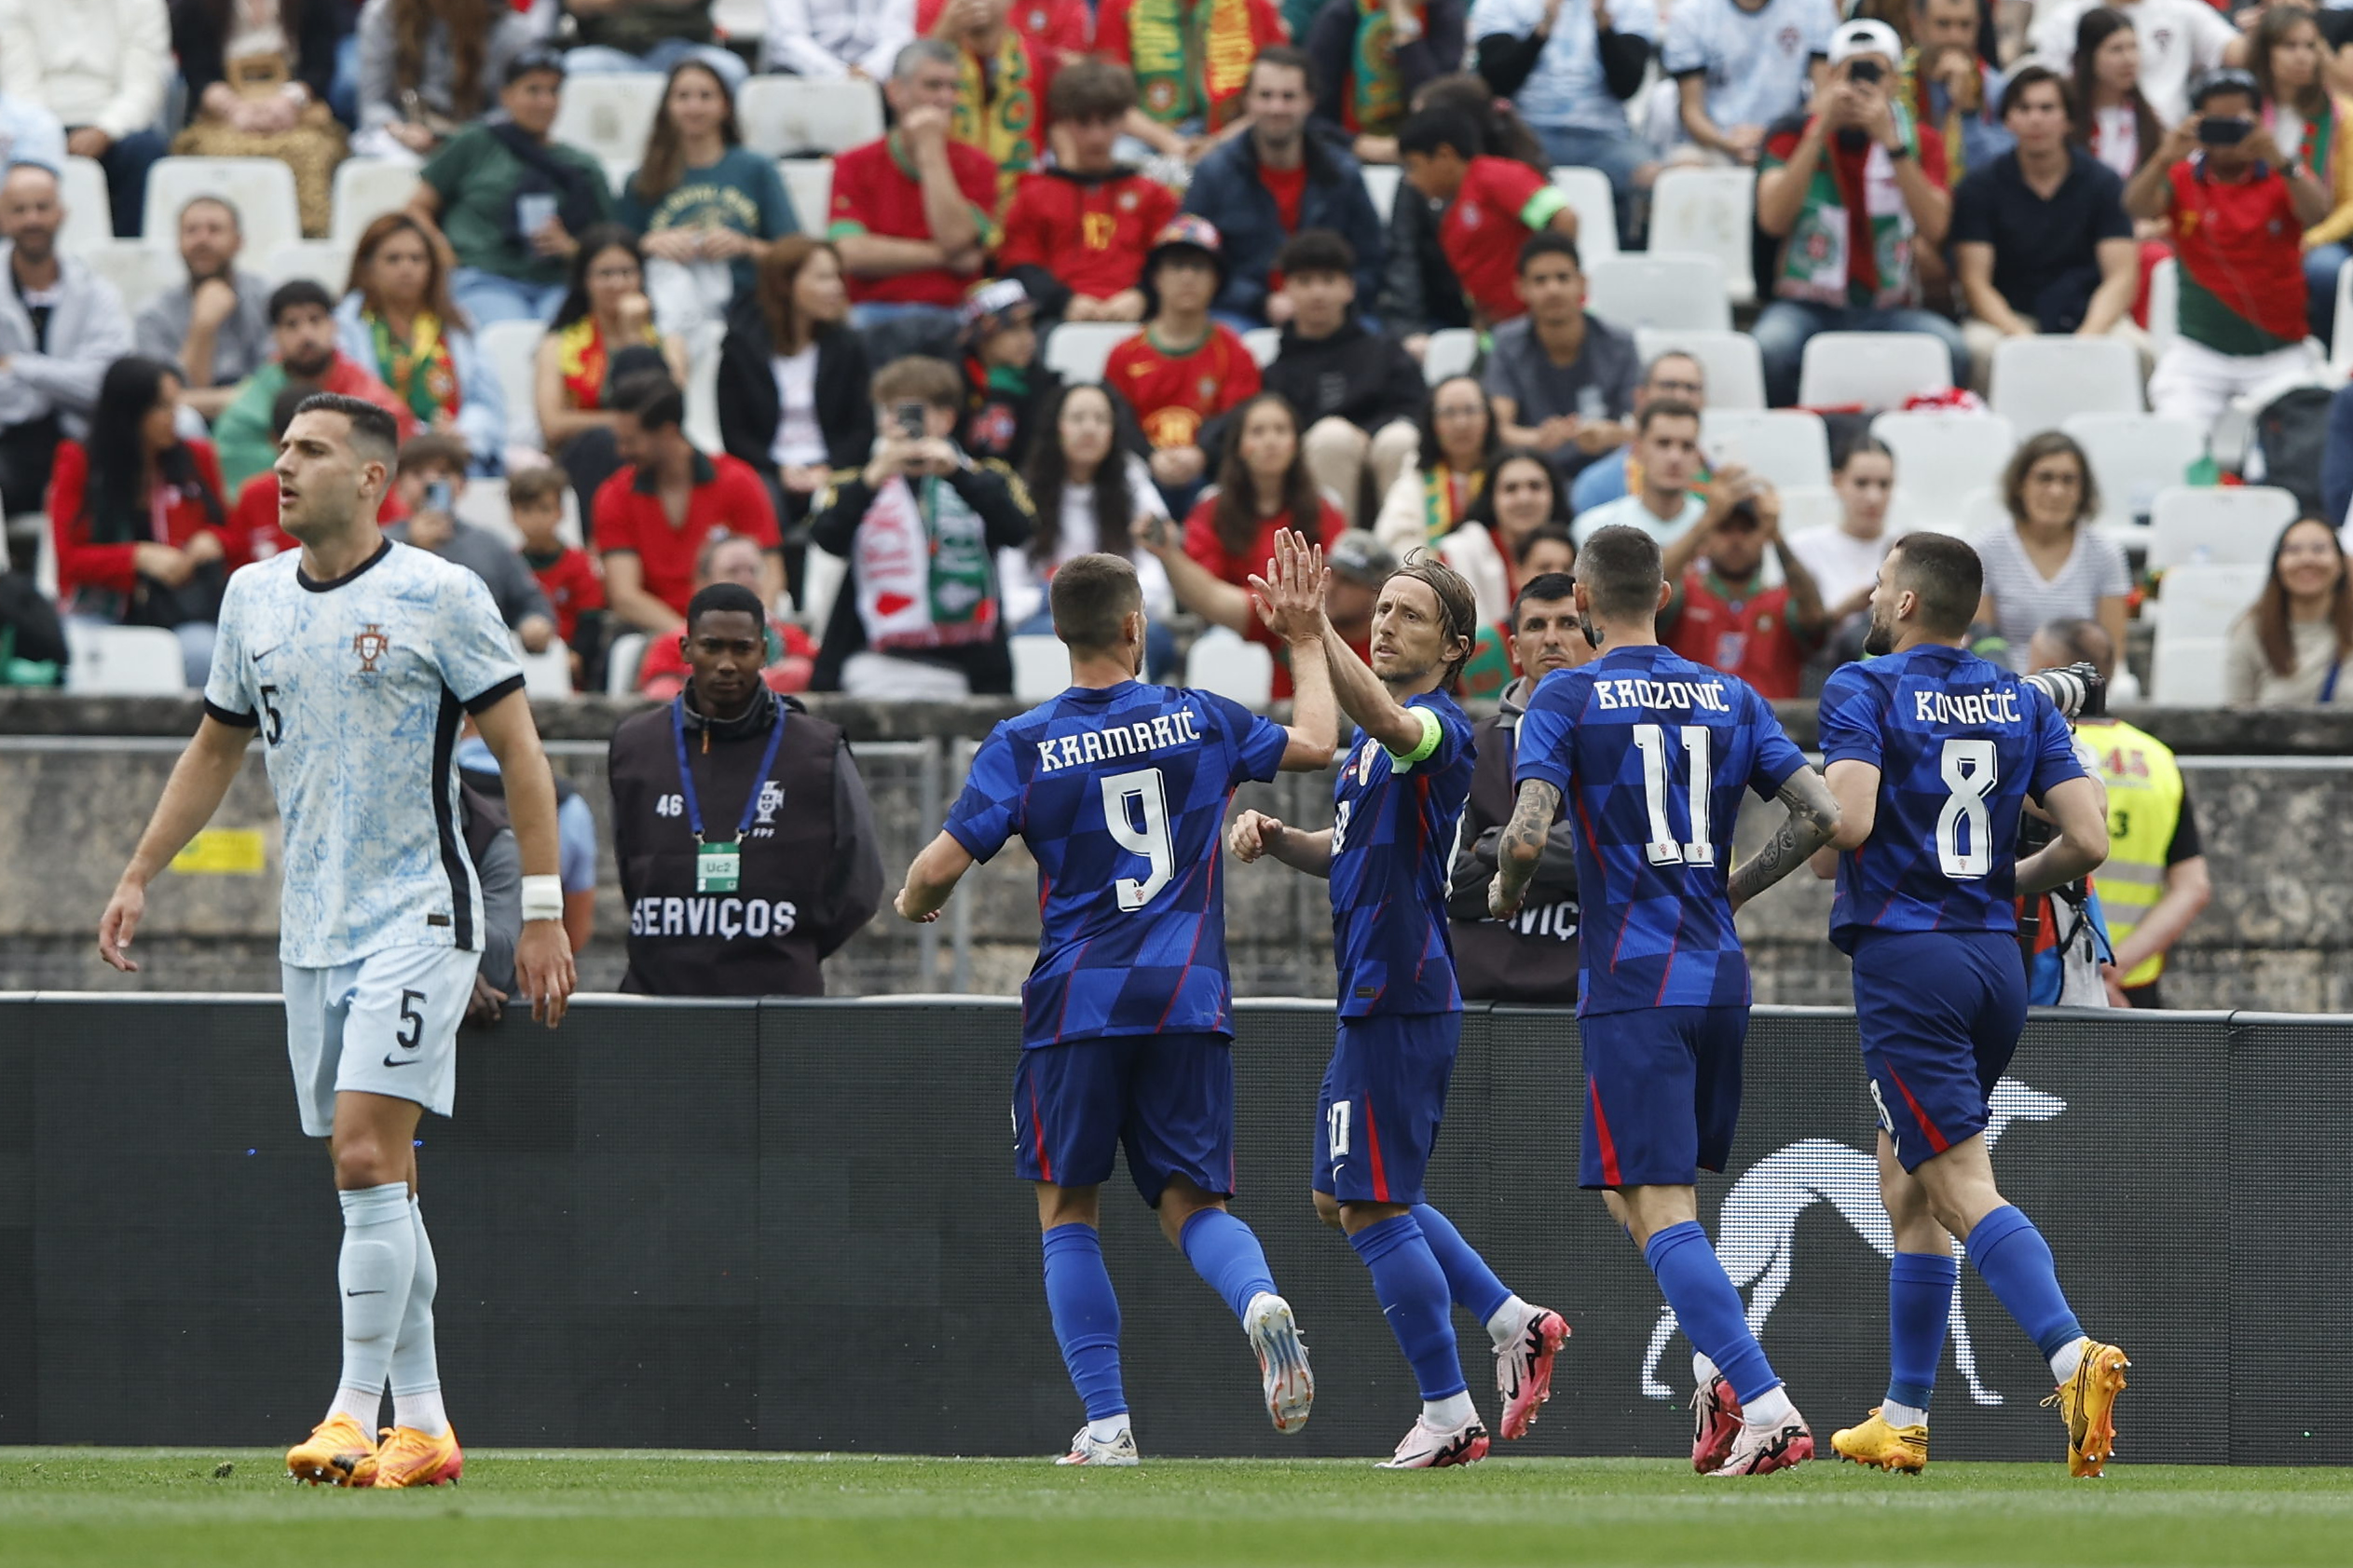 Toujours sans Cristiano Ronaldo, le Portugal s’incline face à la Croatie avant l’Euro